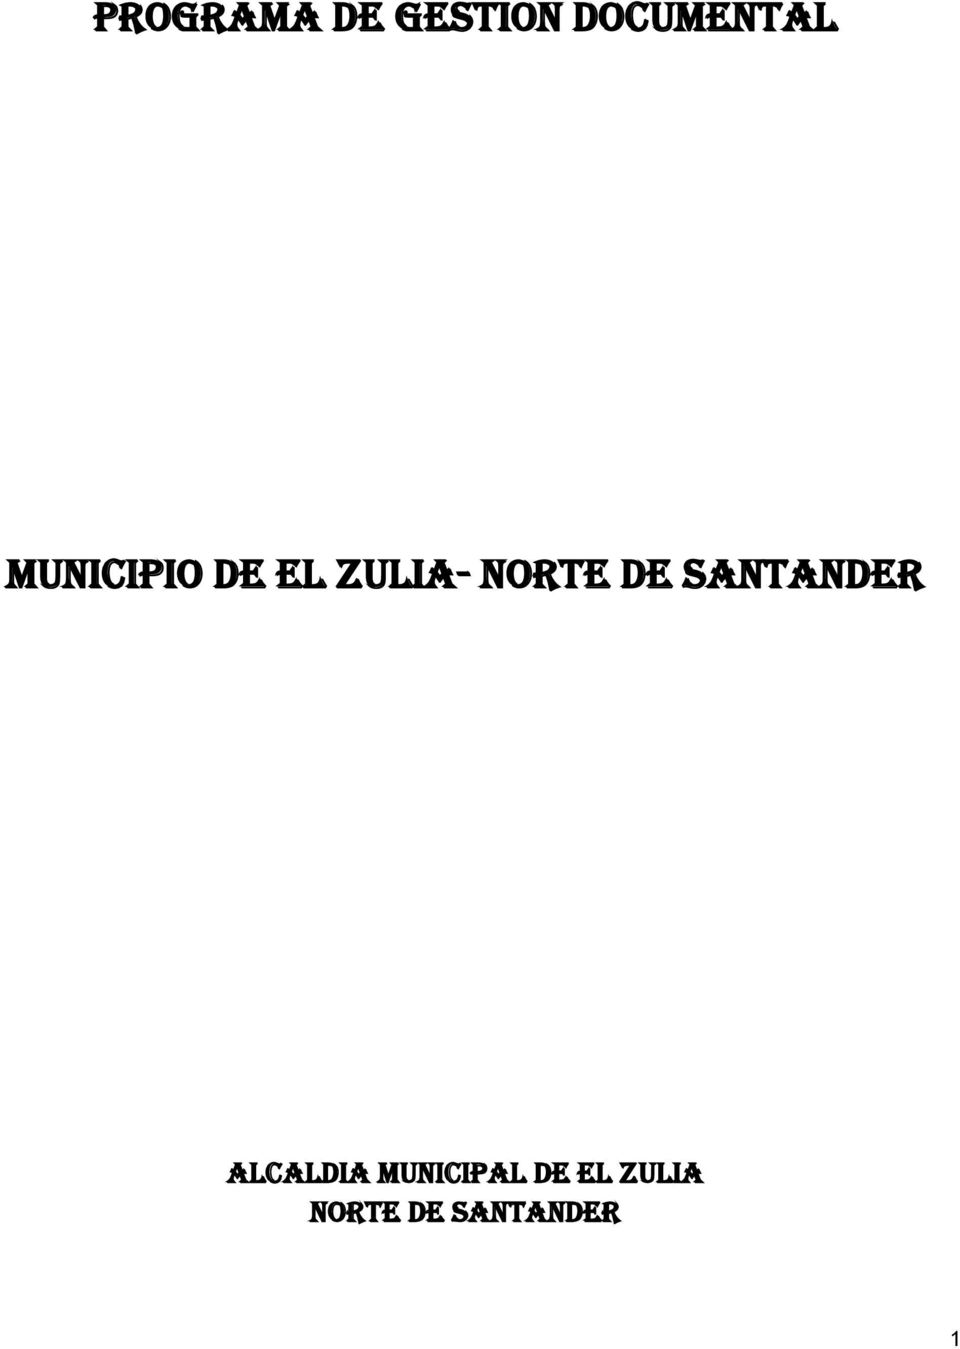 SANTANDER GRUPO DE TRABAJO: